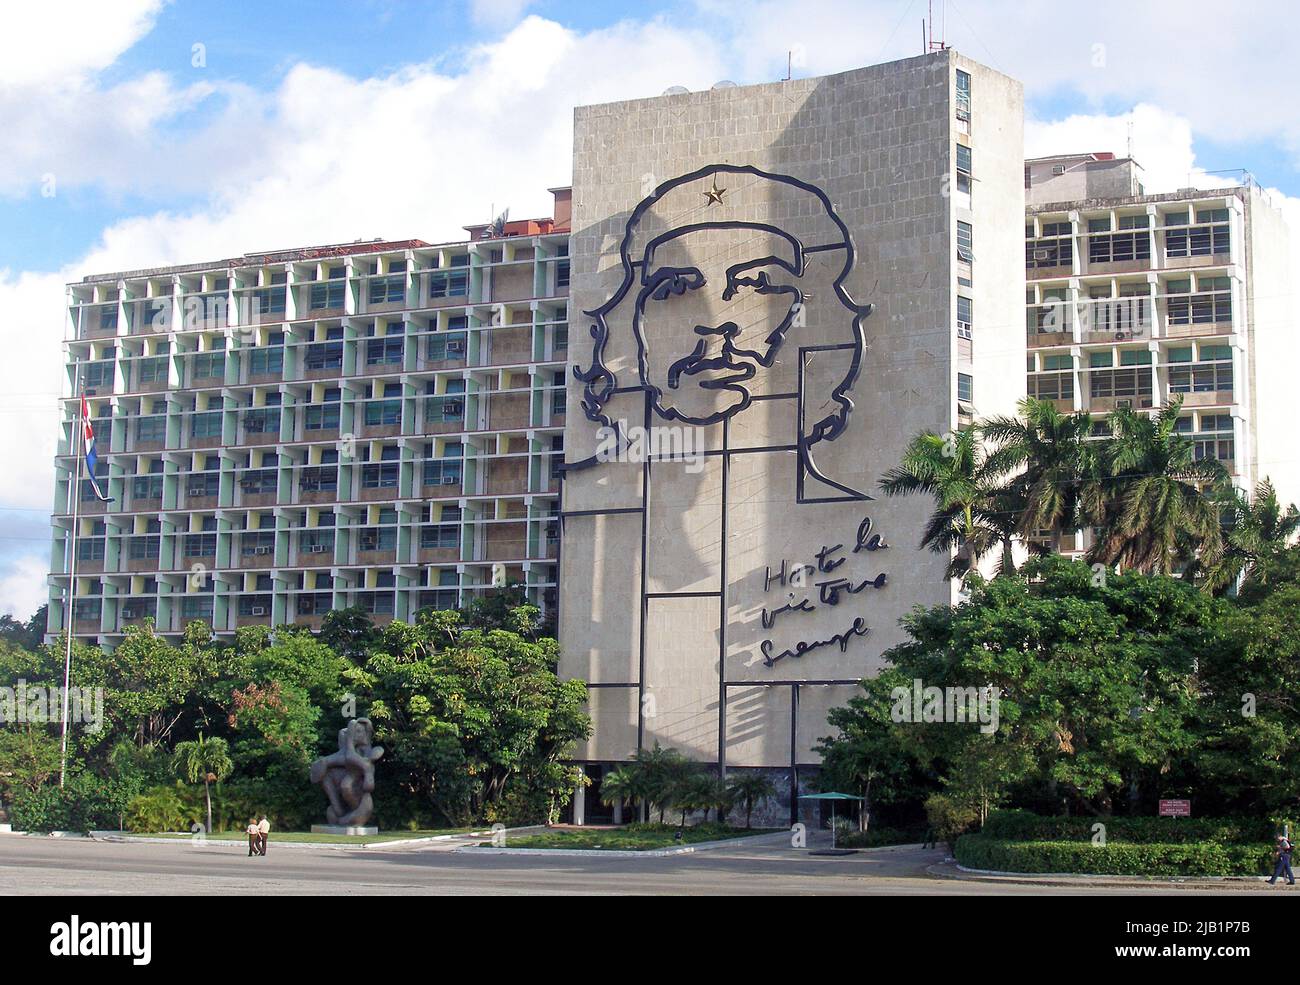 Monumento del Che Guevara en la fachada del Ministerio del Interior, Plaza de la Revolución, La Habana, Cuba, Caribe Foto de stock